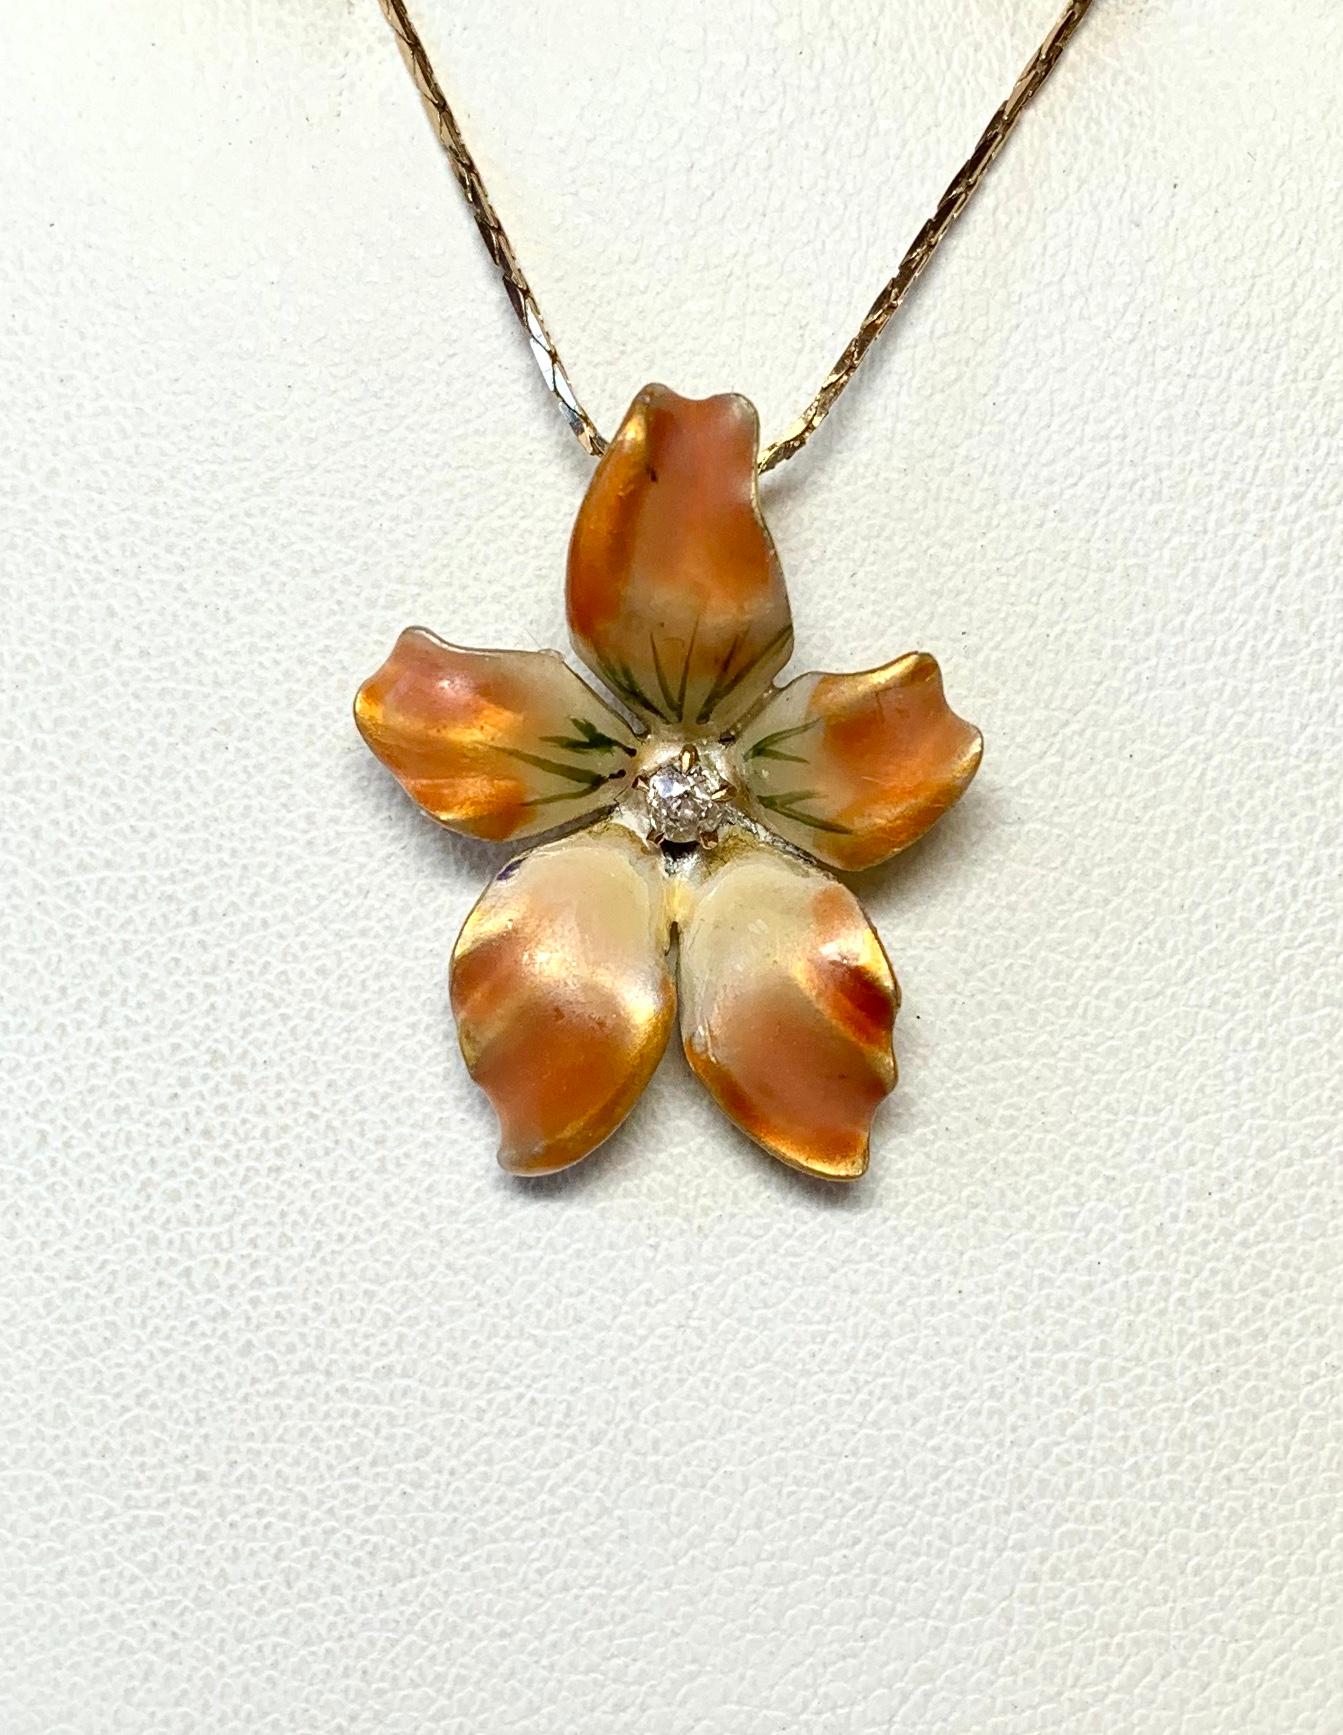 il s'agit d'un pendentif lavallière de style victorien - art nouveau en forme de fleur ou d'orchidée - si étonnant avec un spectaculaire émail multicolore orange, crème et jaune de la plus haute qualité, serti d'un diamant rayonnant de grande